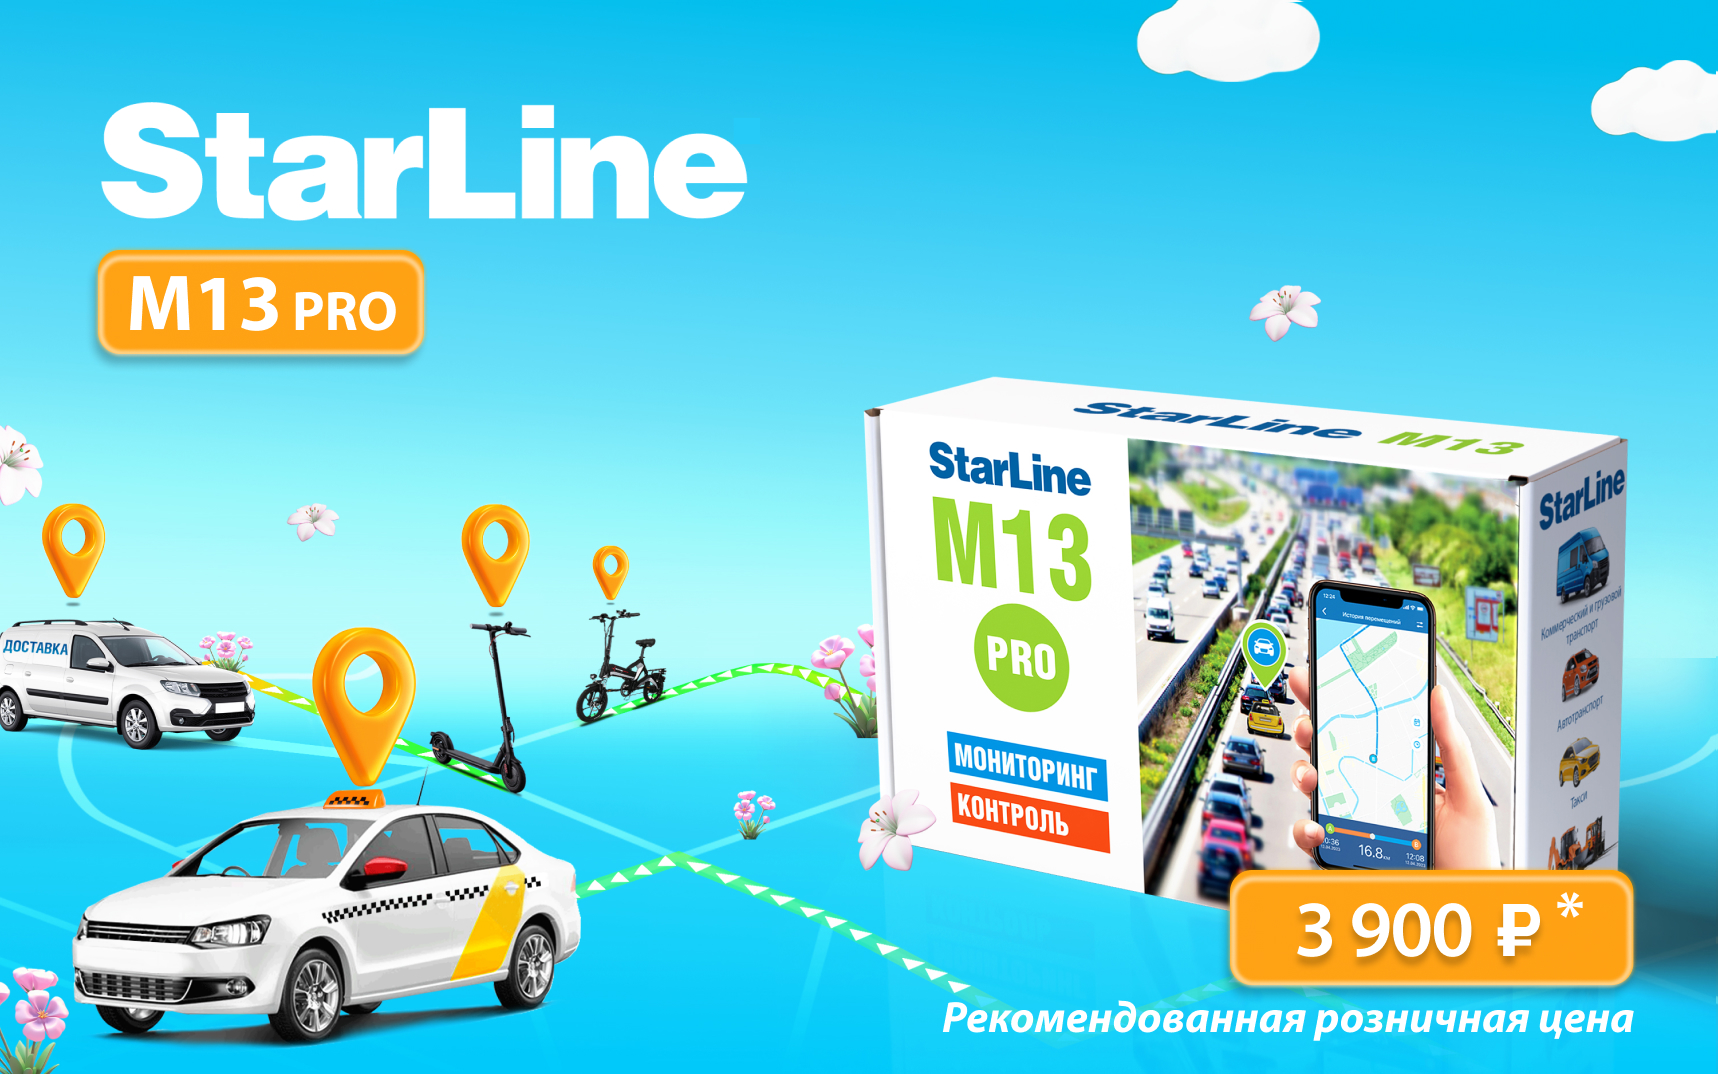 Управление автопарком стало проще: знакомьтесь с трекером StarLine M13 PRO!